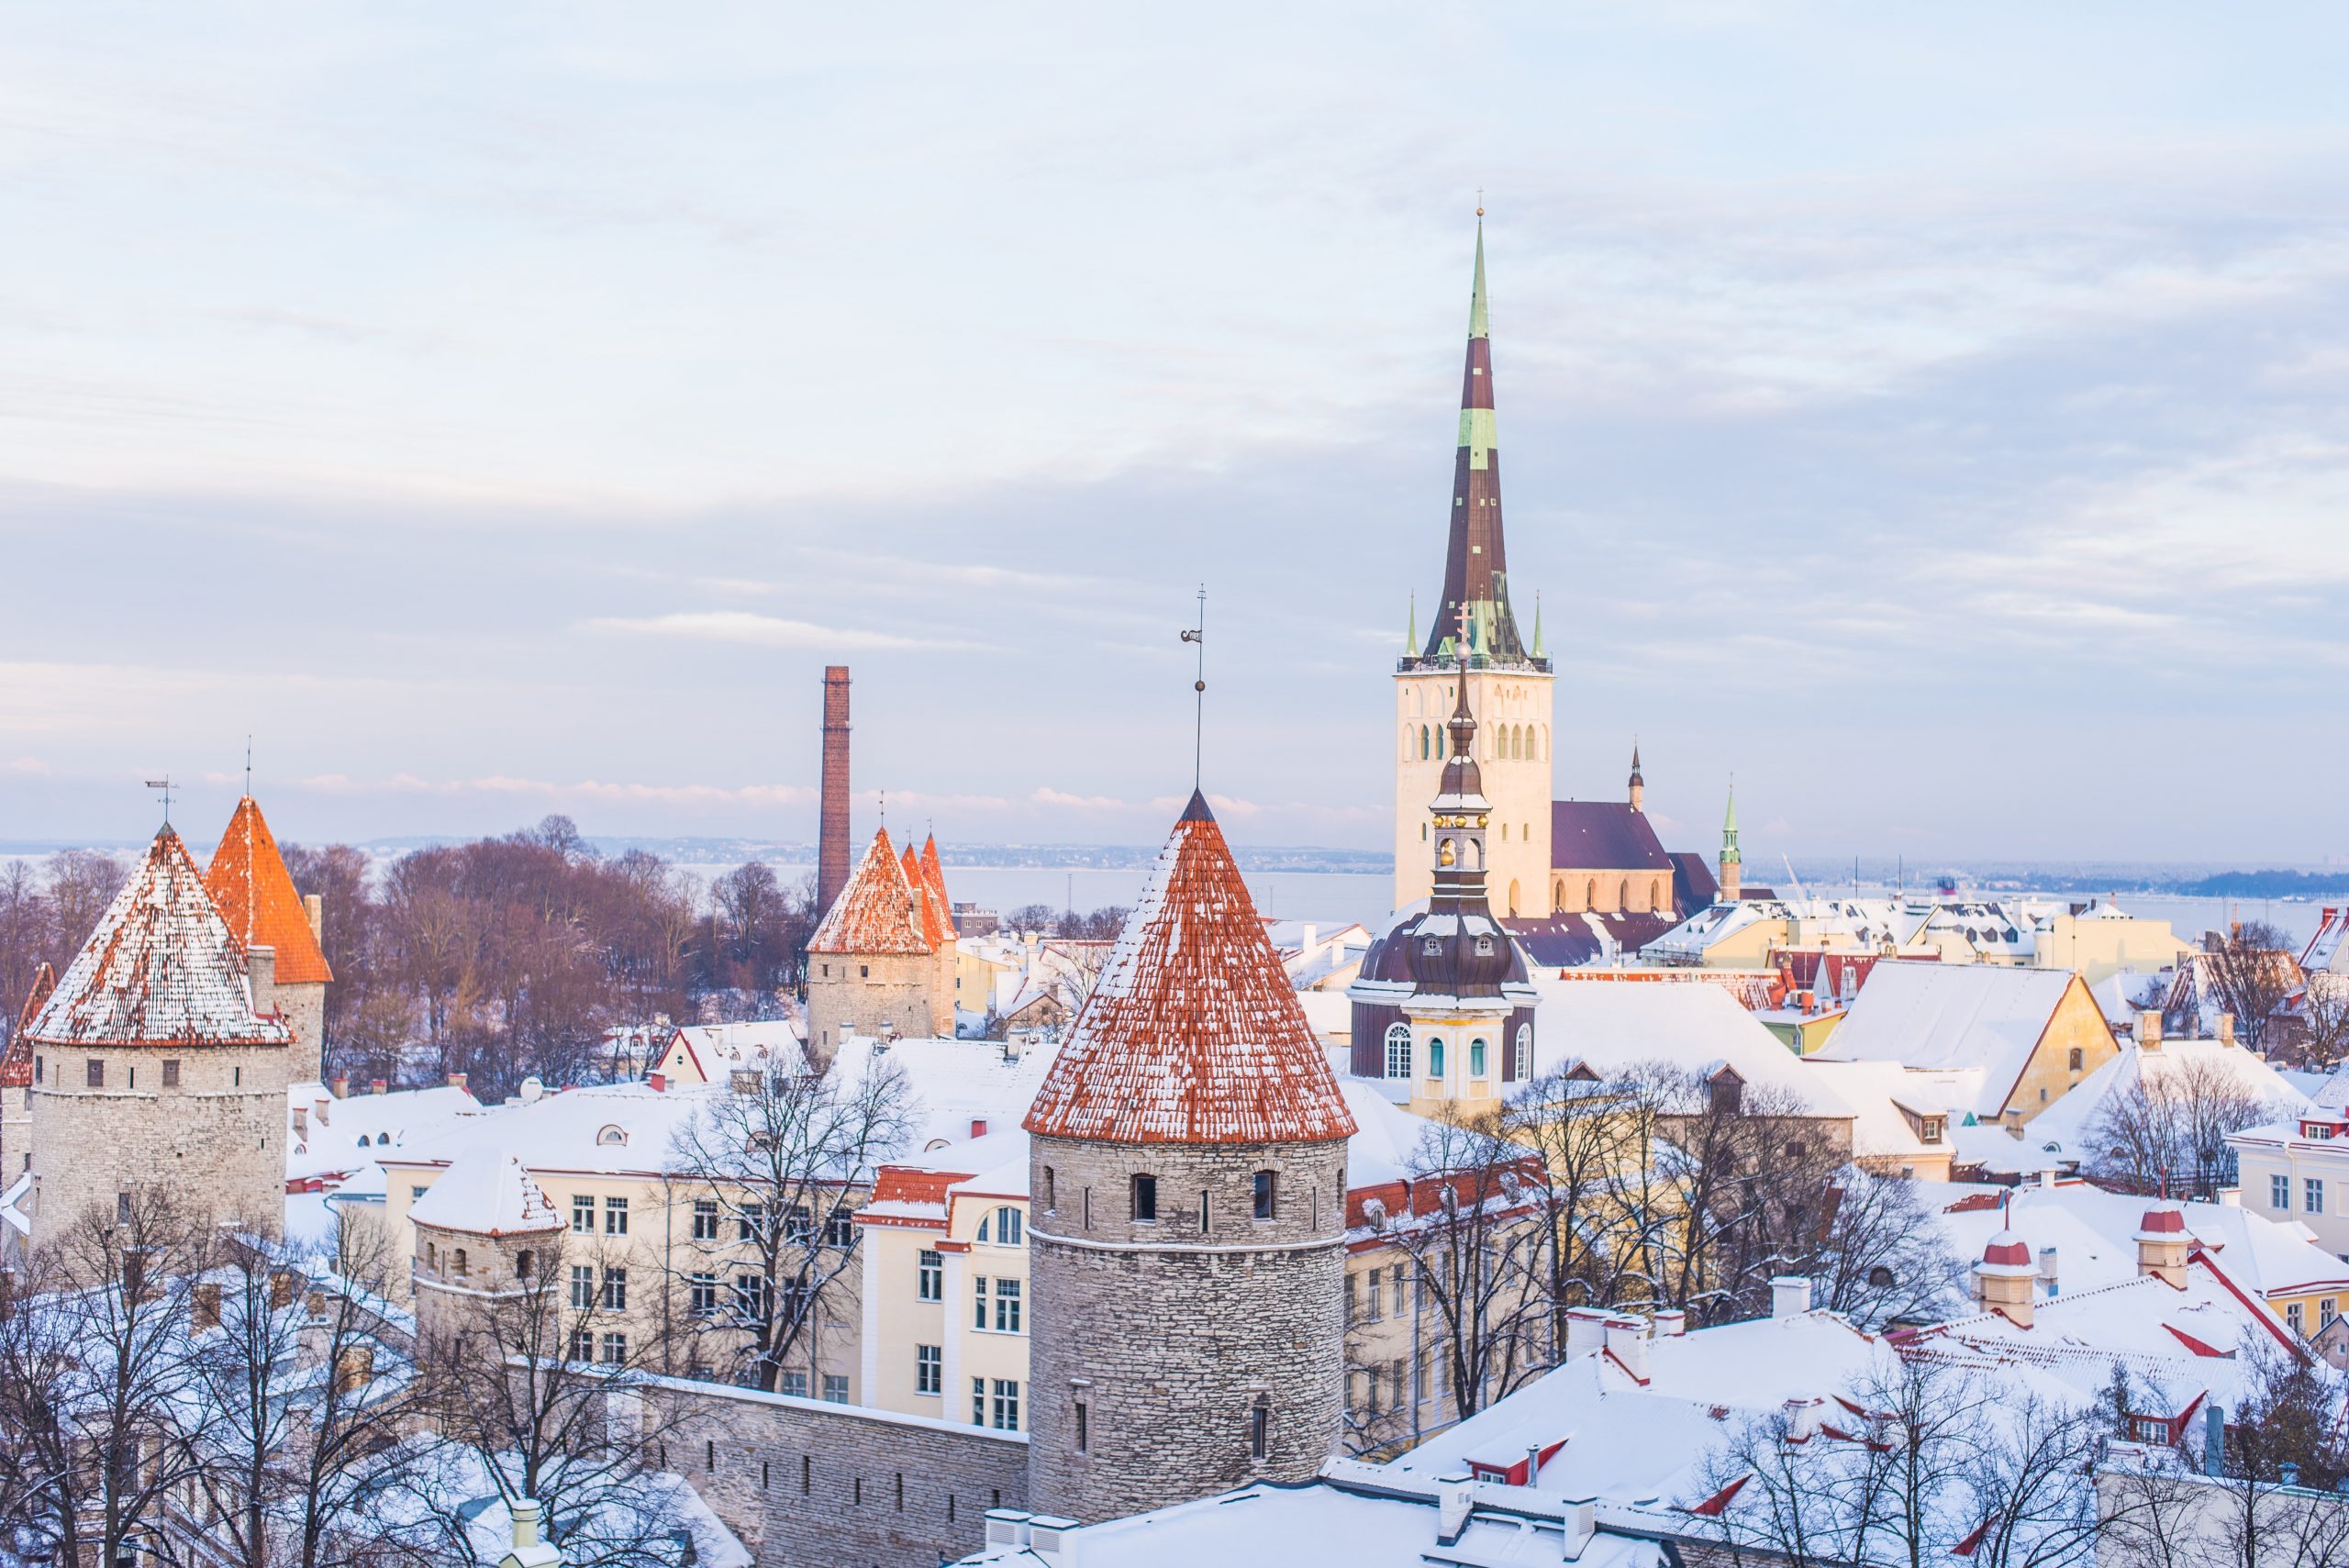 Tallinn in winter - best winter wonderland places to visit